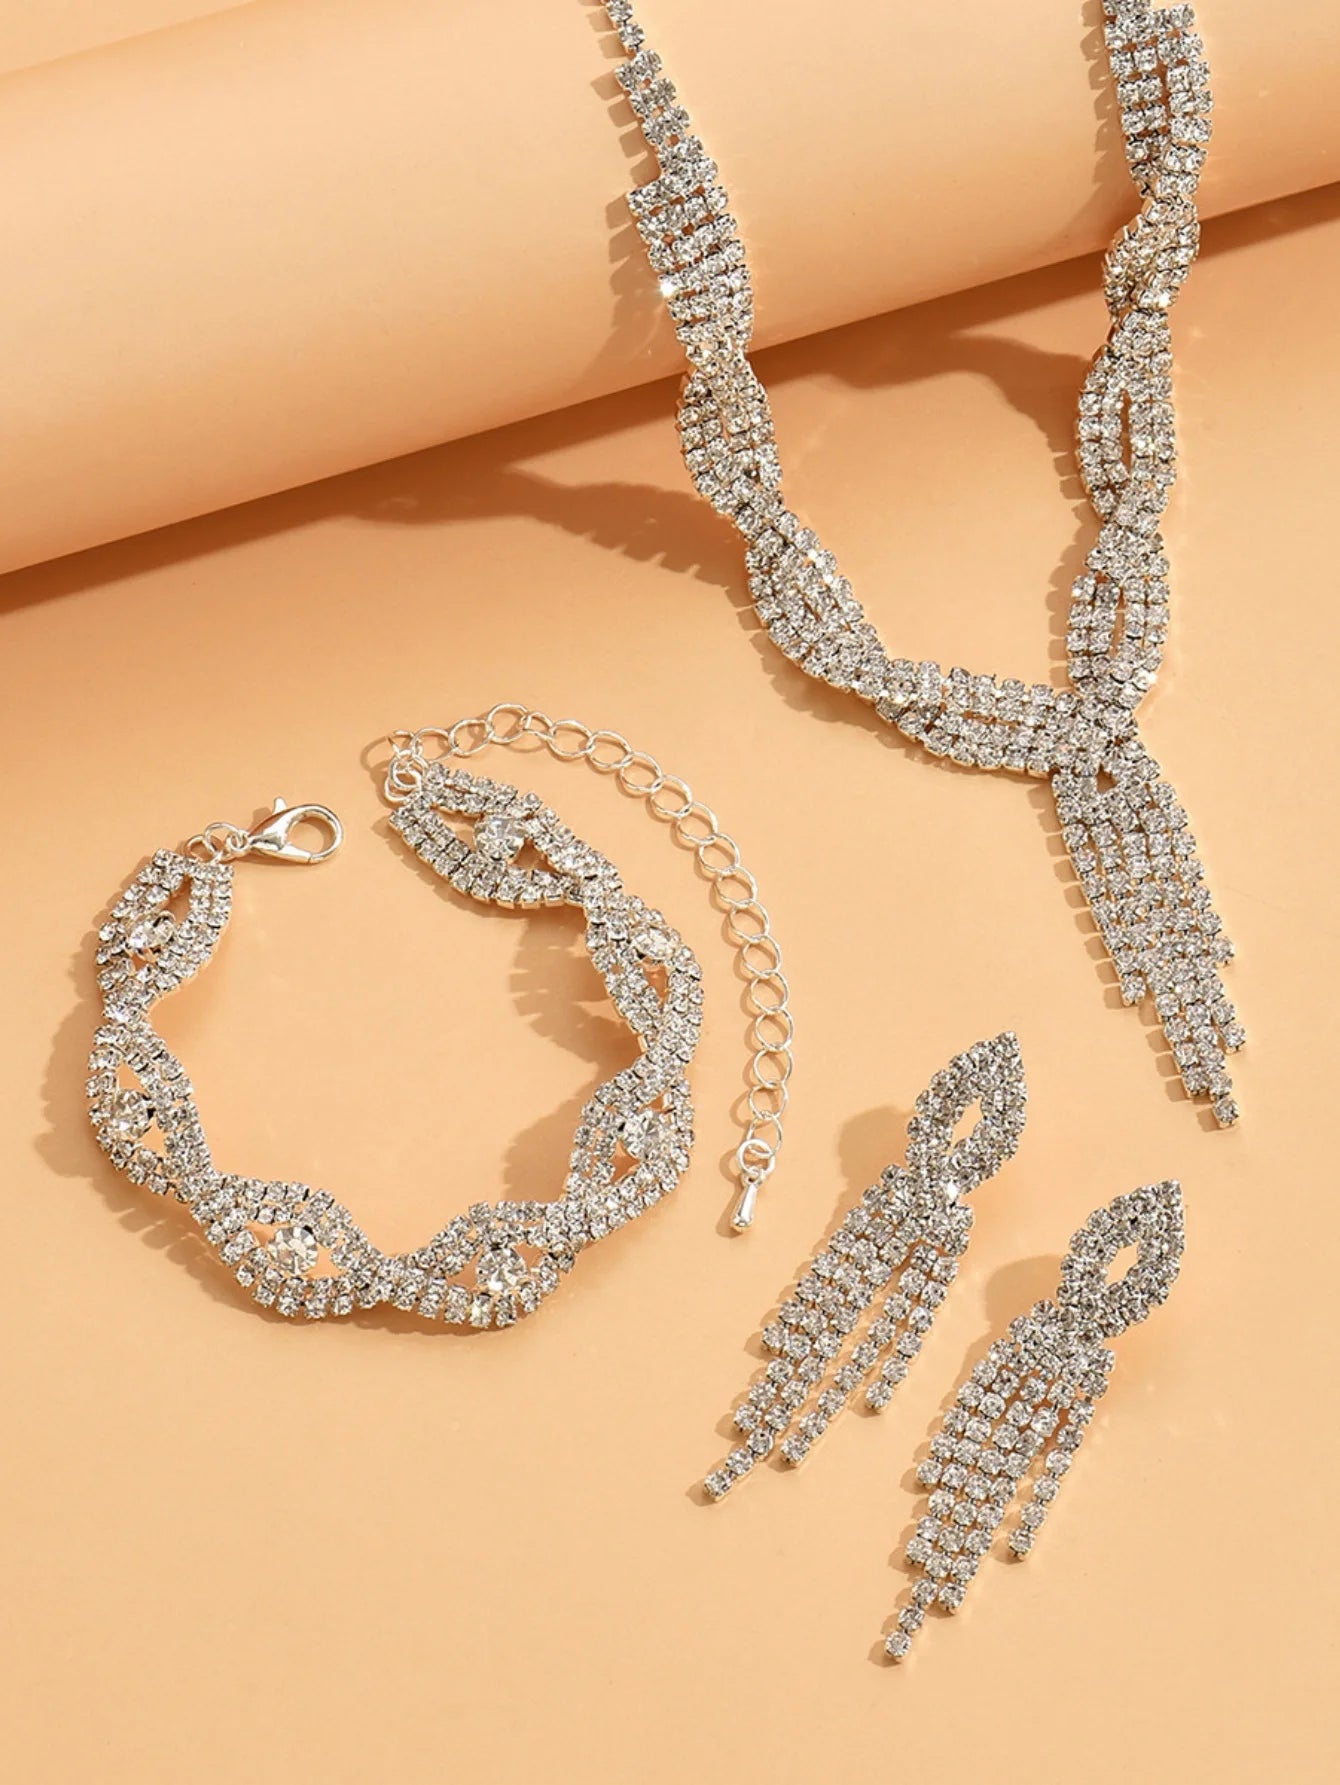 4 Piece Women's Jewelry Set with Rhinestones | BEGOGI shop |